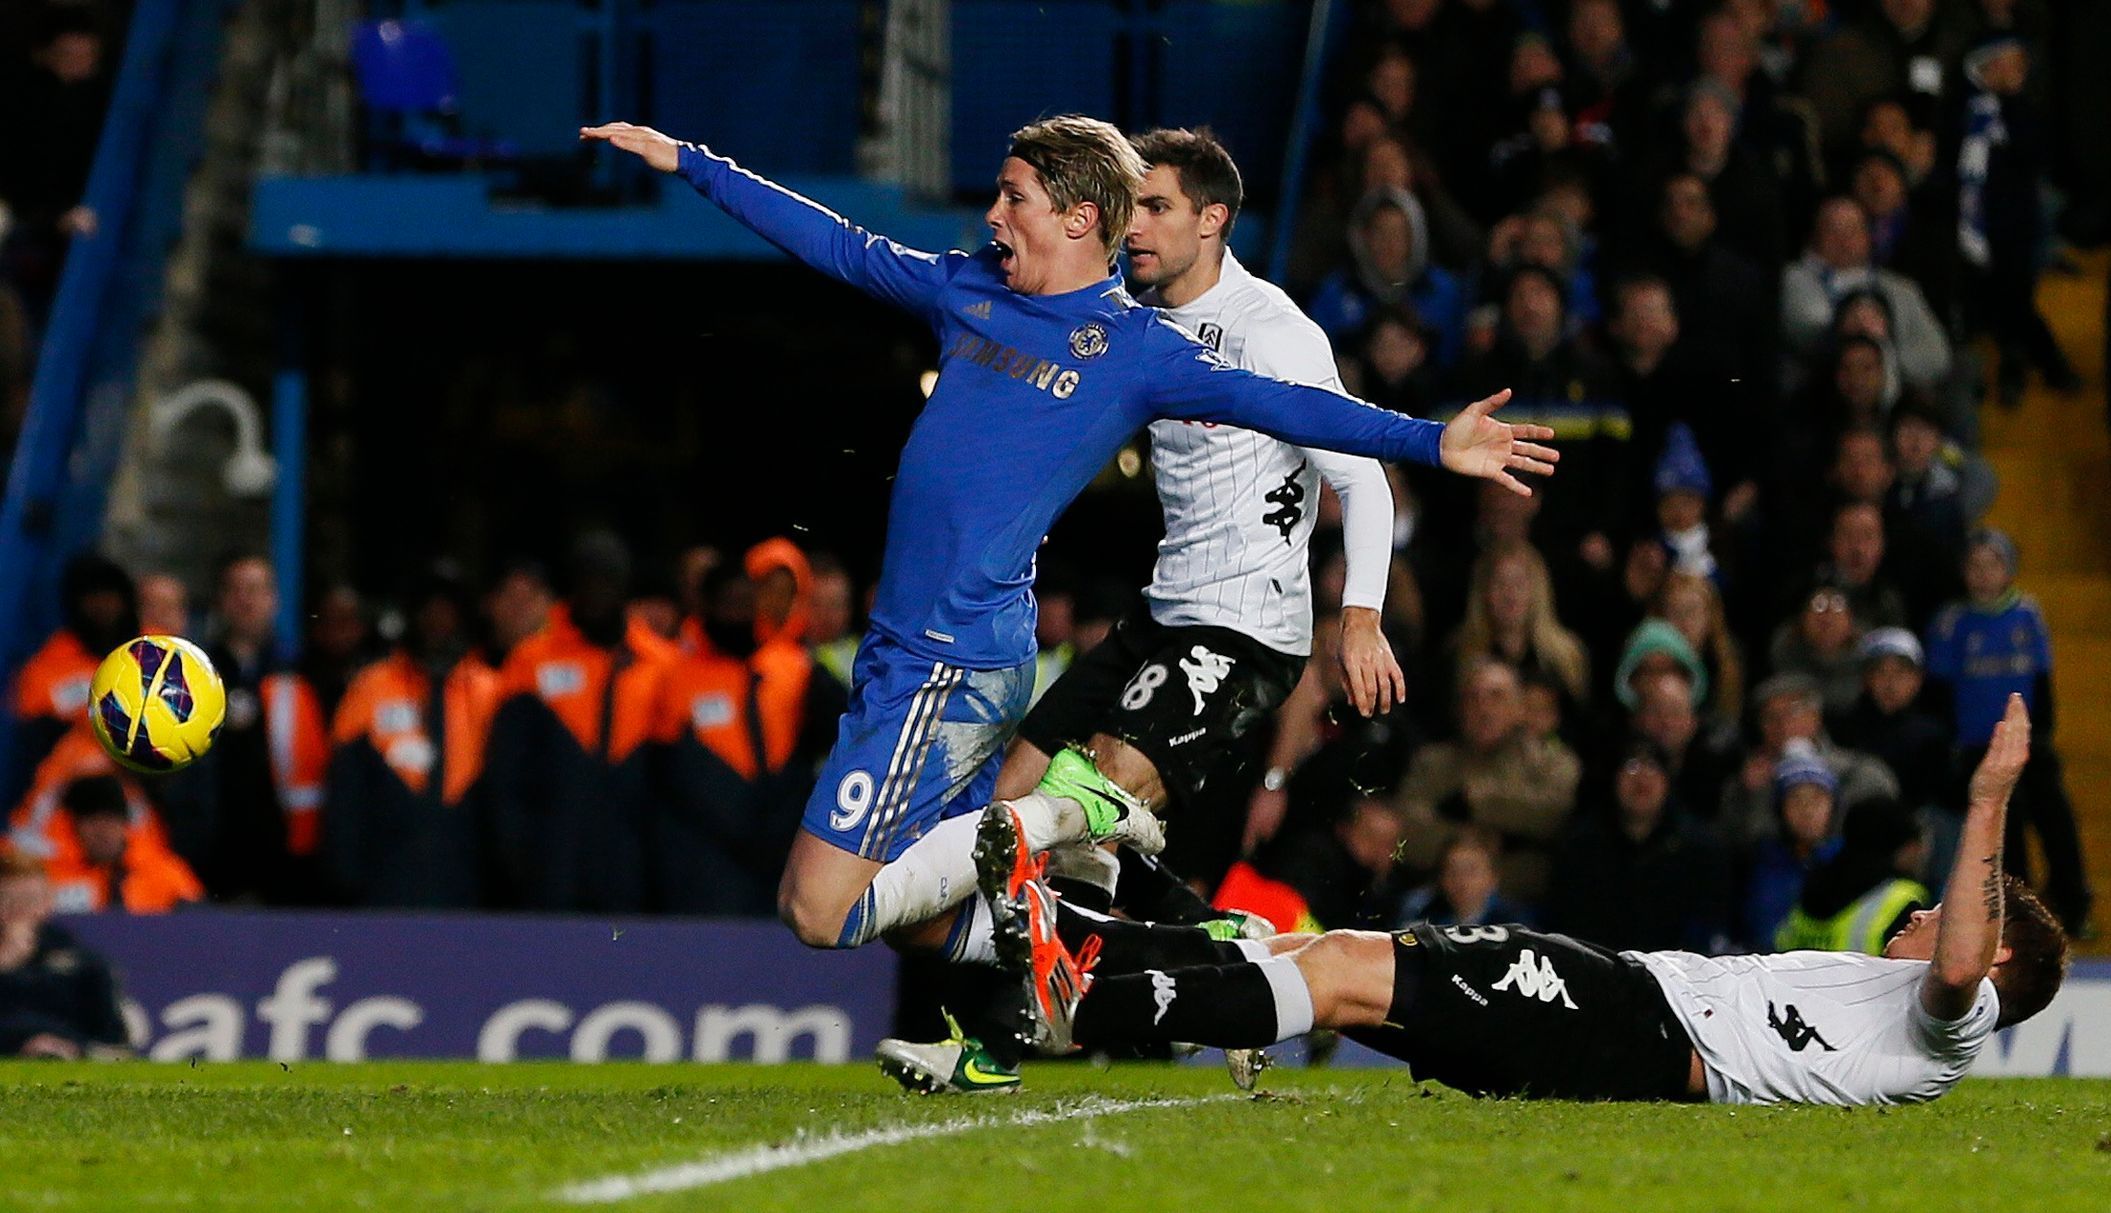 Chelsea - Fulham ( Torres v akci)